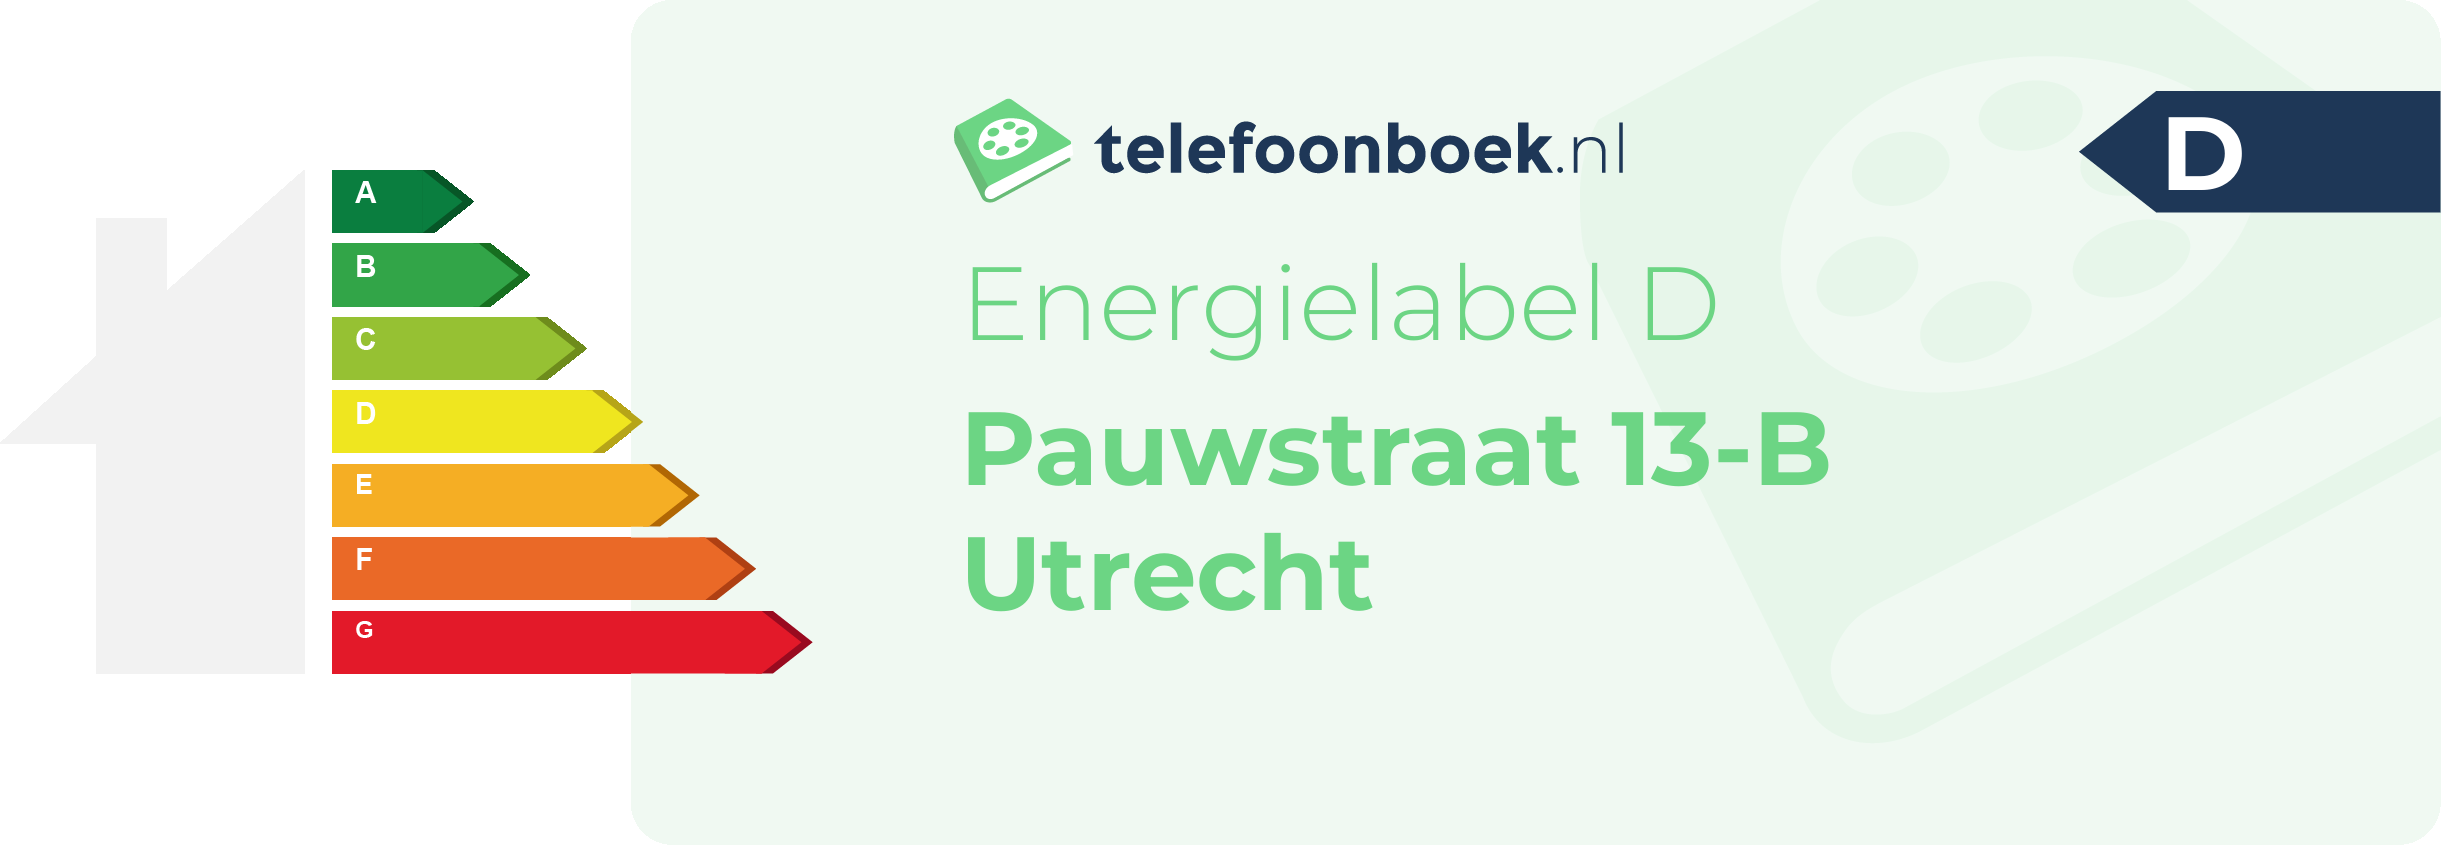 Energielabel Pauwstraat 13-B Utrecht